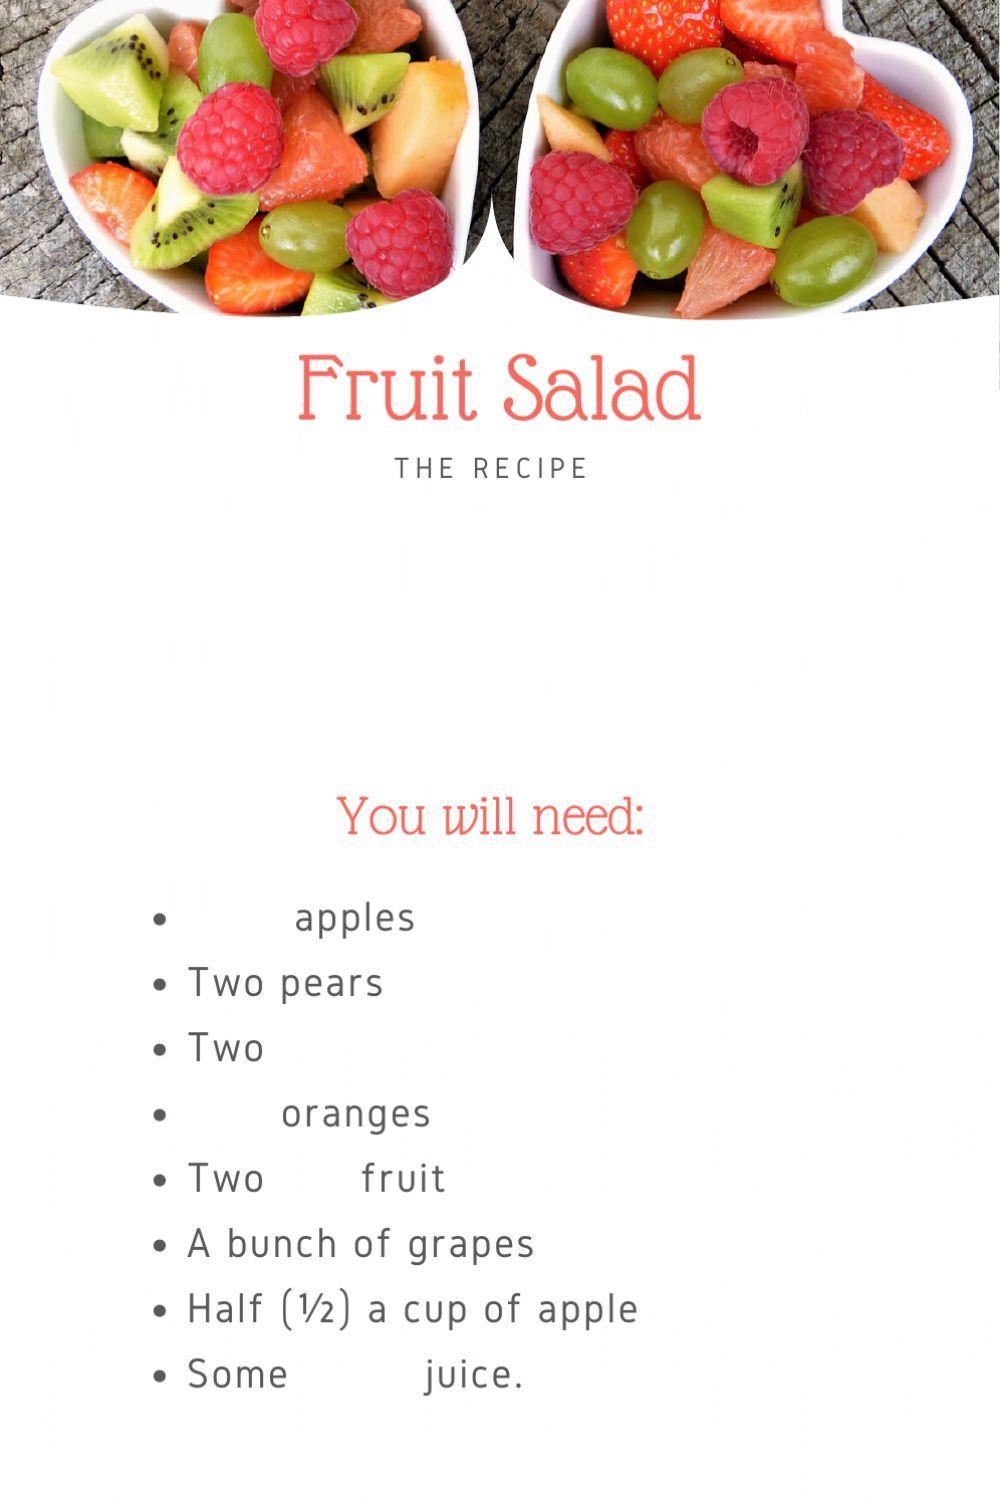 Let's Make Fruit Salad